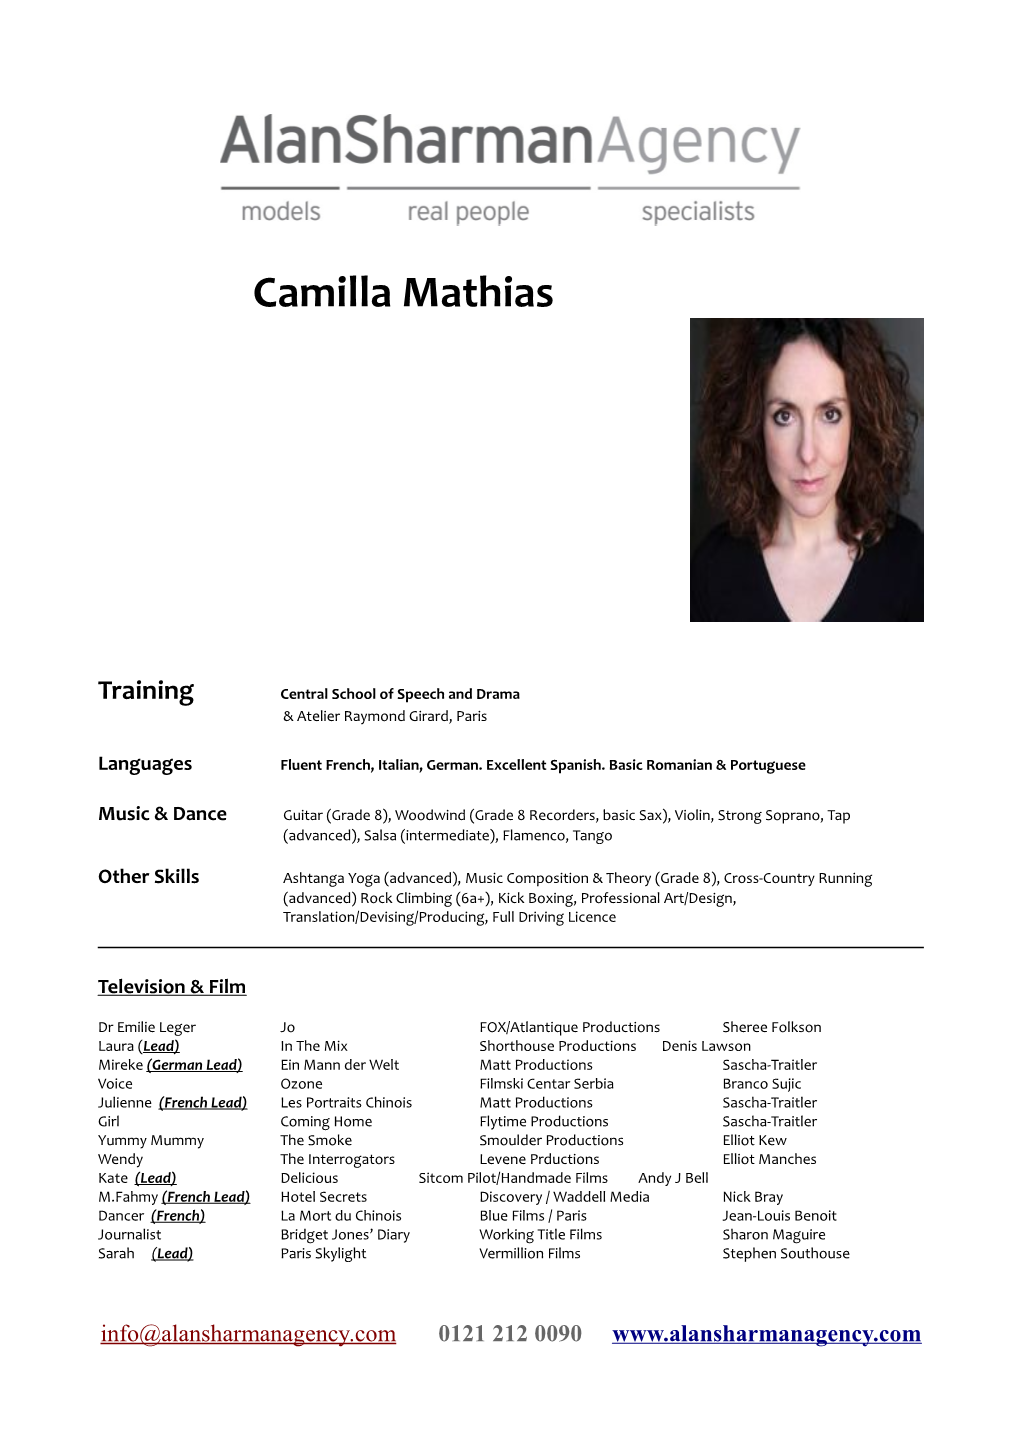 Camilla Mathias